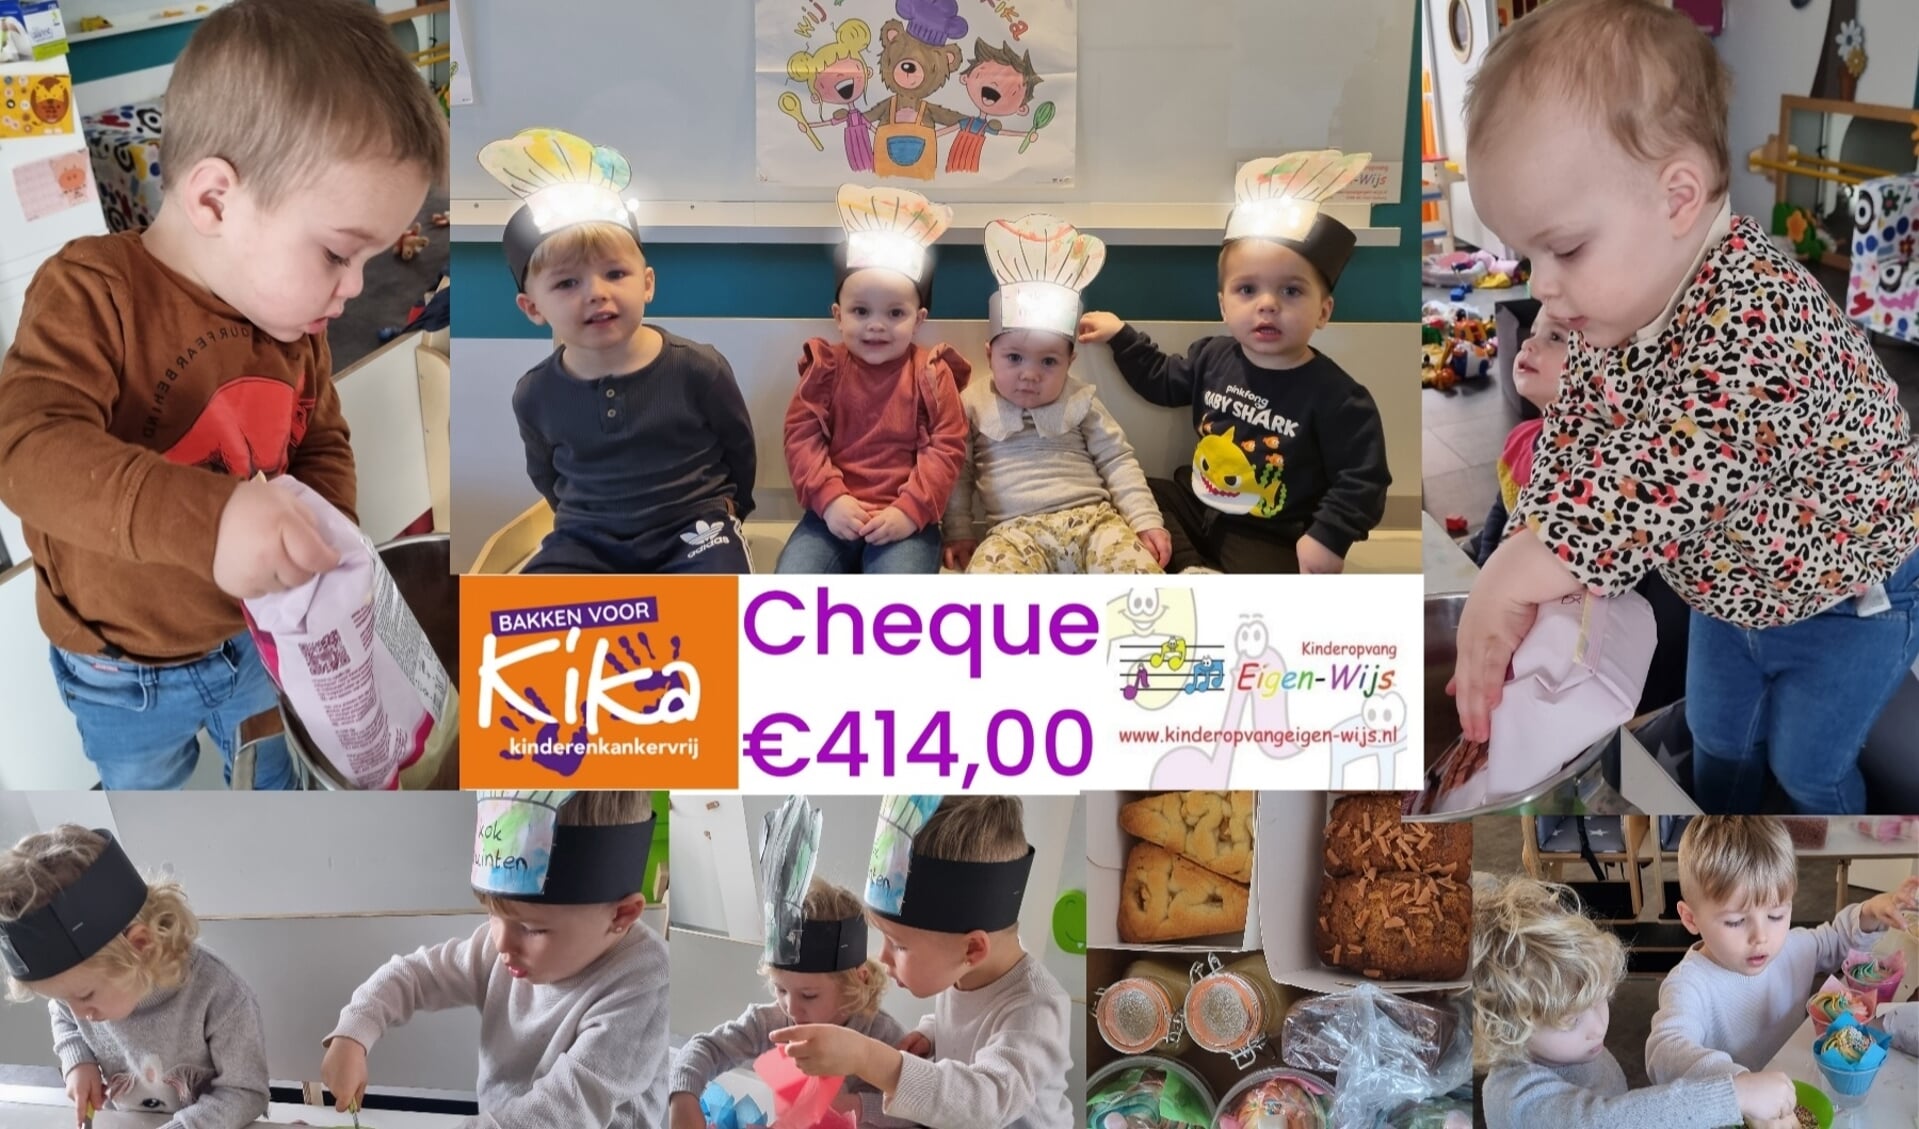 De bakkertjes van Kinderopvang Eigen-Wijs hebben €414,00 opgehaald voor KiKa